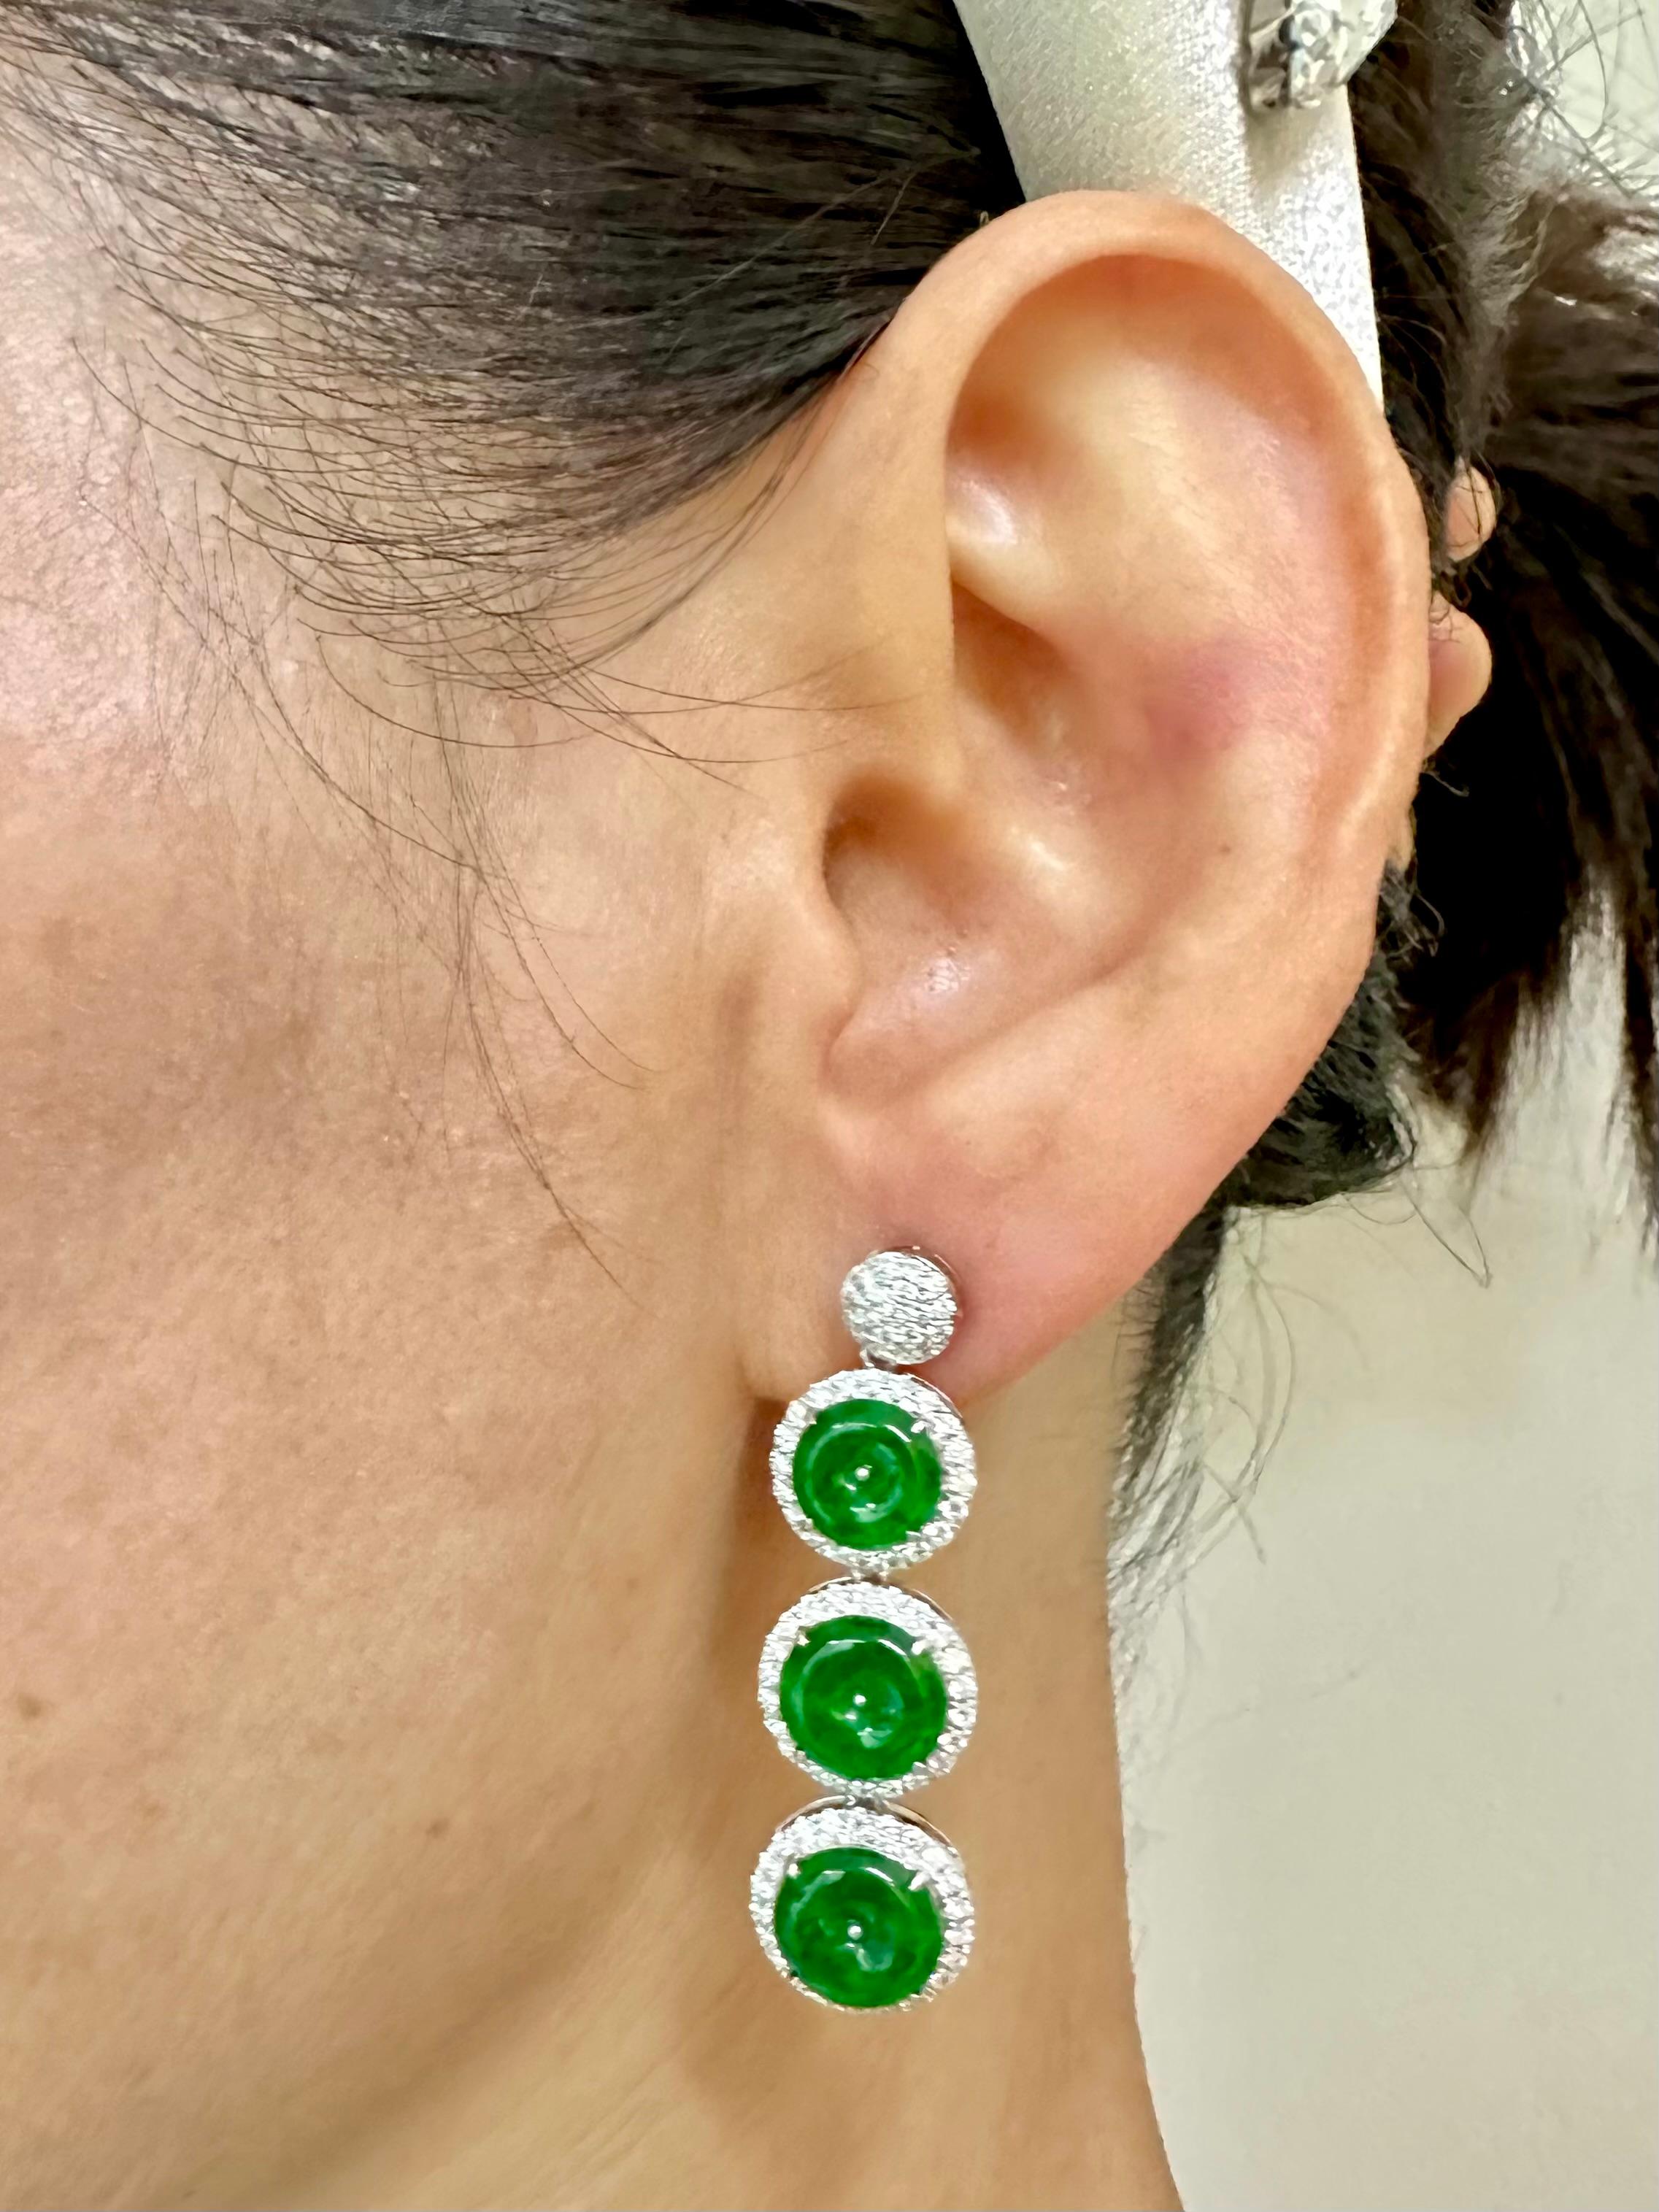 Bitte sehen Sie sich das HD-Video an! Hier ist ein besonderes Paar spinatgrüner Jade-Ohrringe. Der Durchmesser der 3 Jade-Donut-Abschnitte von oben nach unten beträgt 10,58 mm, 11,41 mm bzw. 11,81 mm. Die Ohrringe sind in 18 Karat Weißgold und